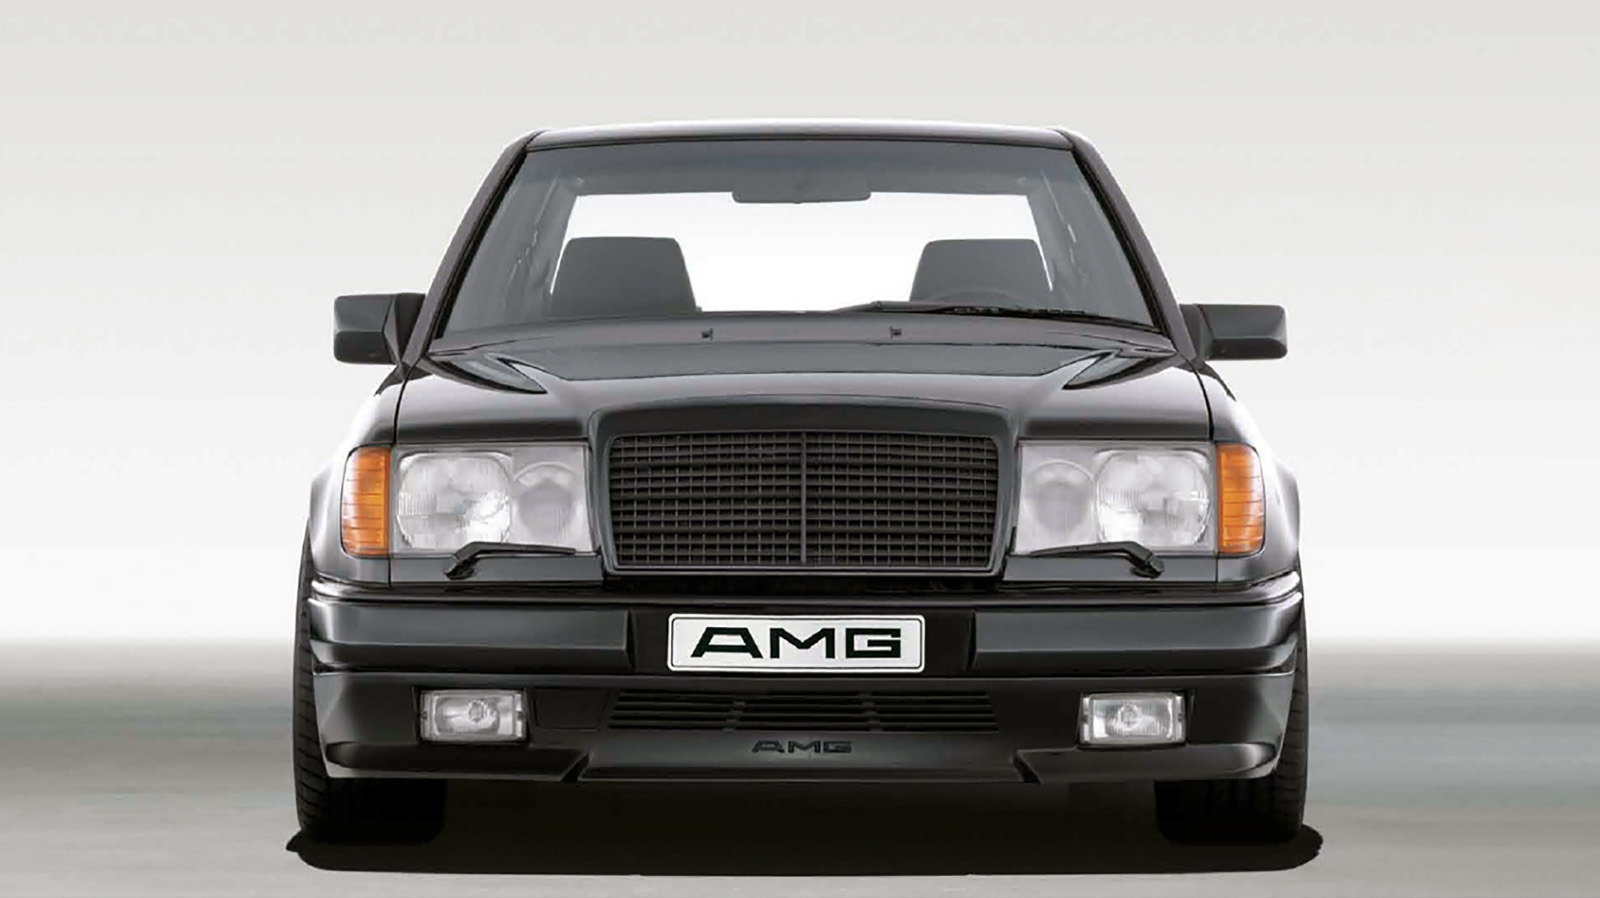 این AMG کمیاب یکی از جالب ترین خودروهای دهه ۸۰ است